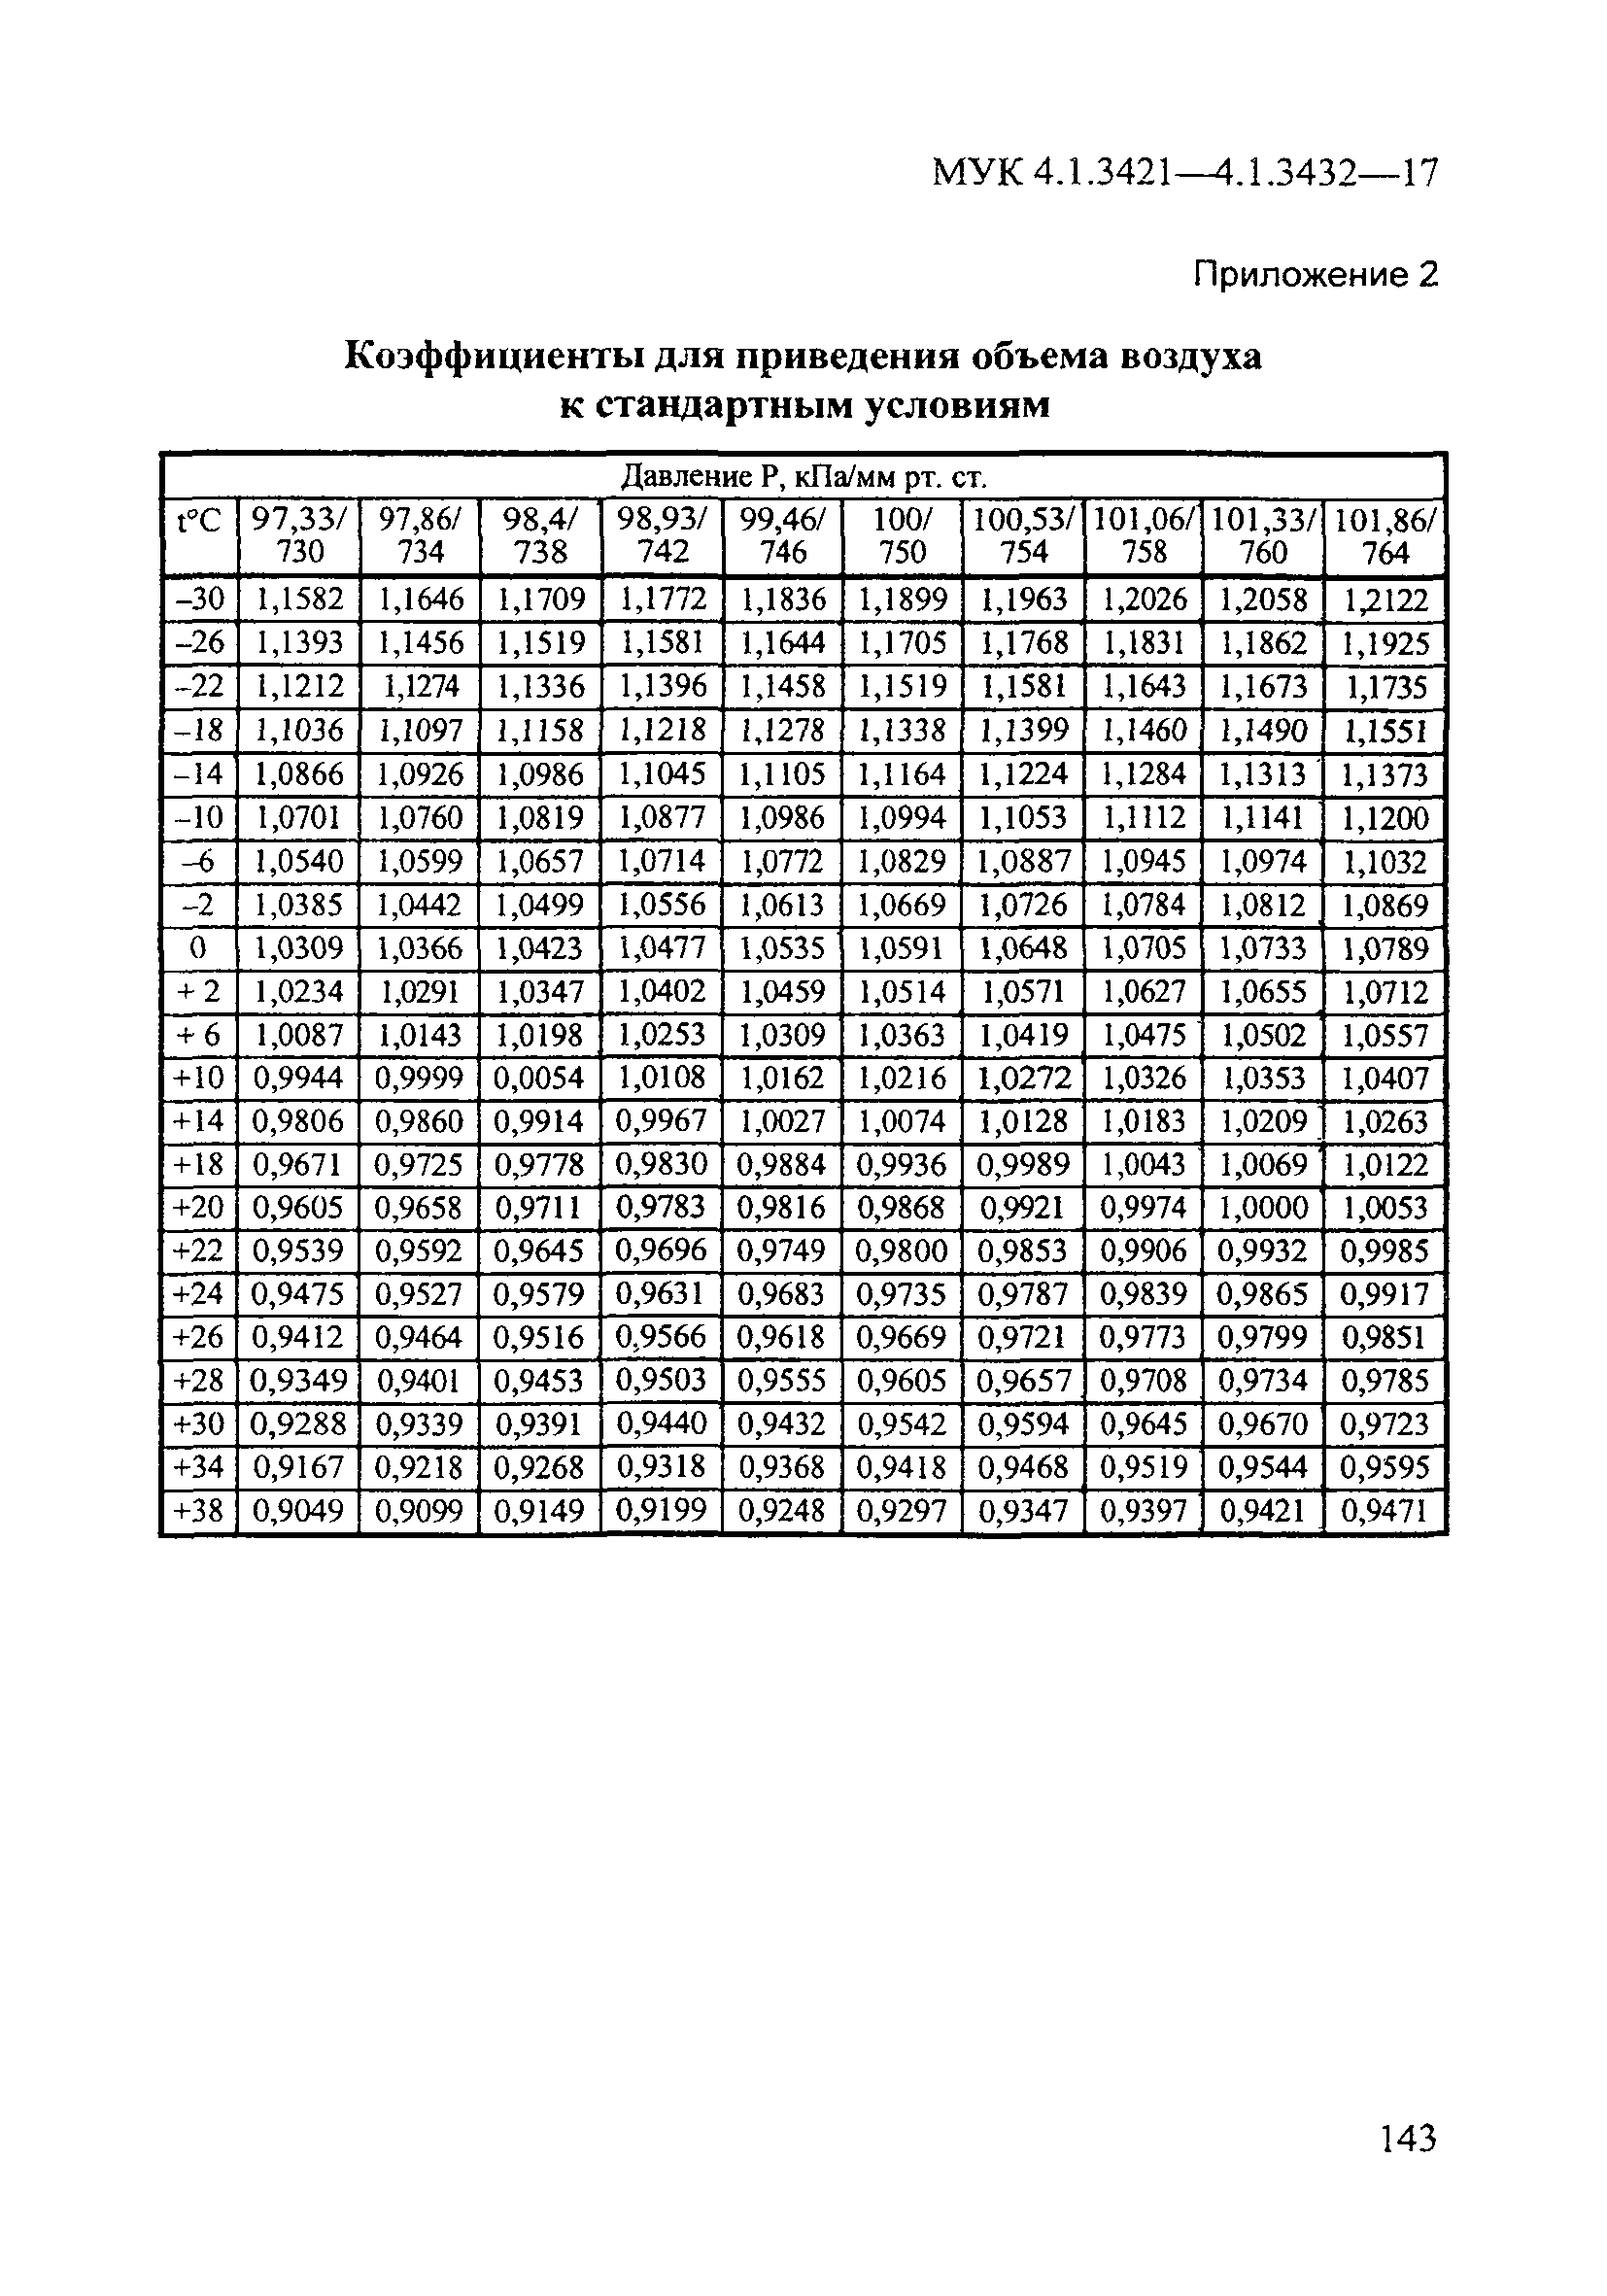 МУК 4.1.3431-17